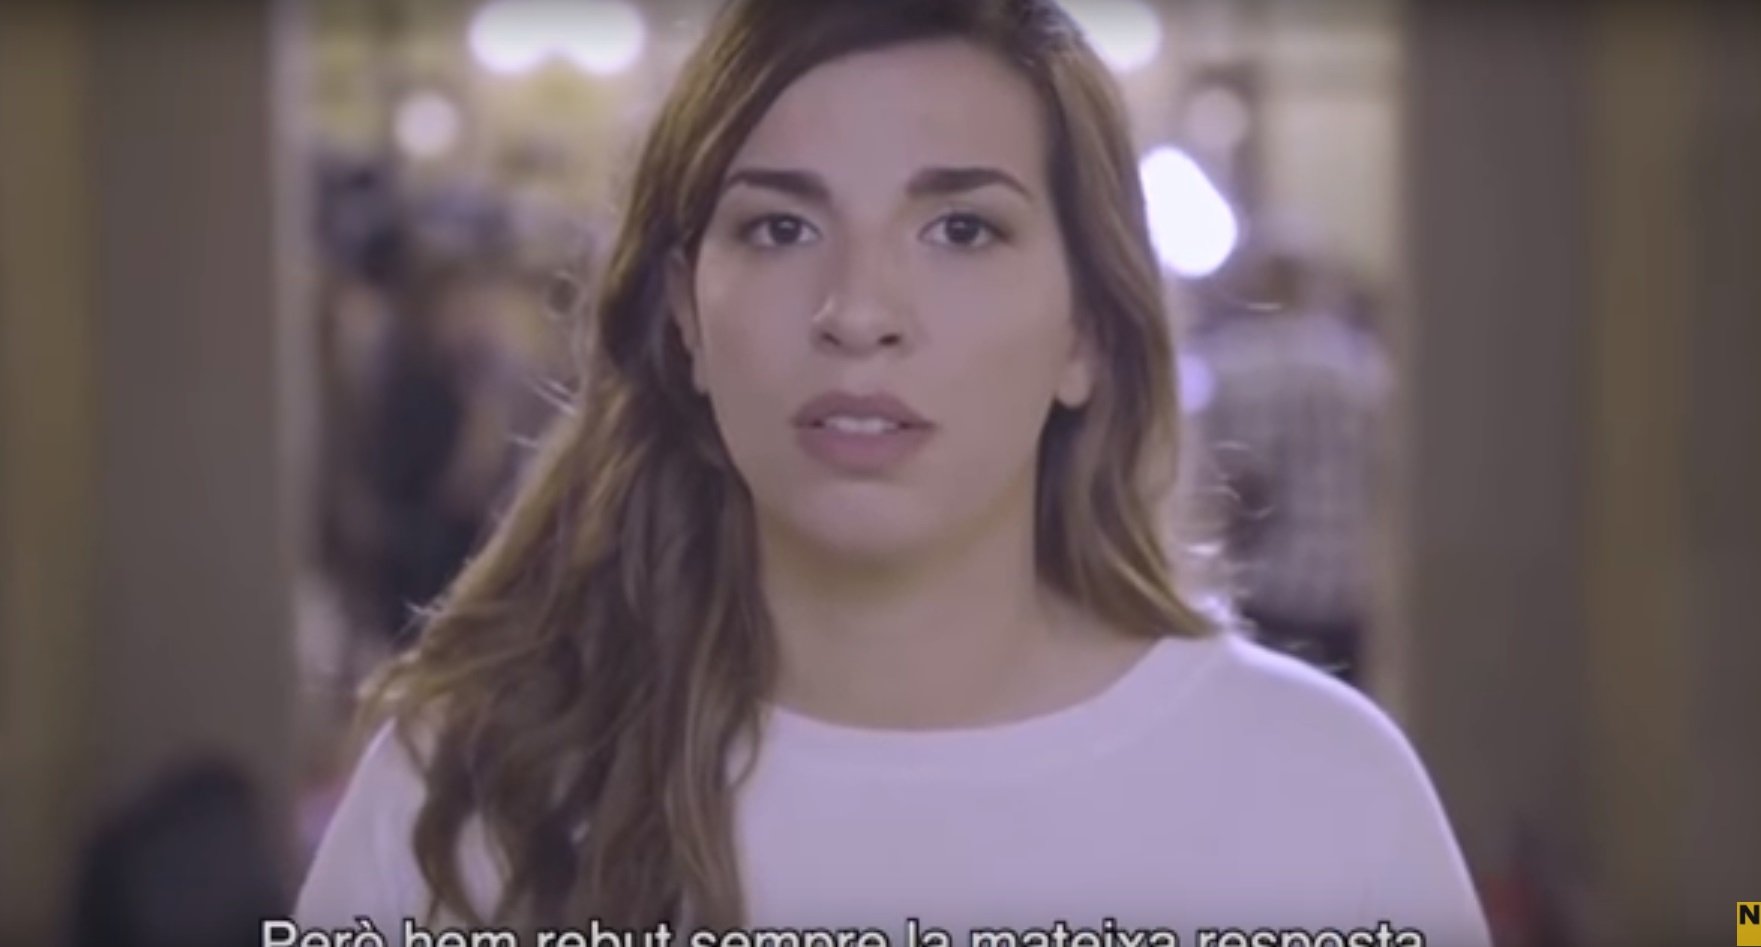 Ultras insultan a la actriz del vídeo de Òmnium